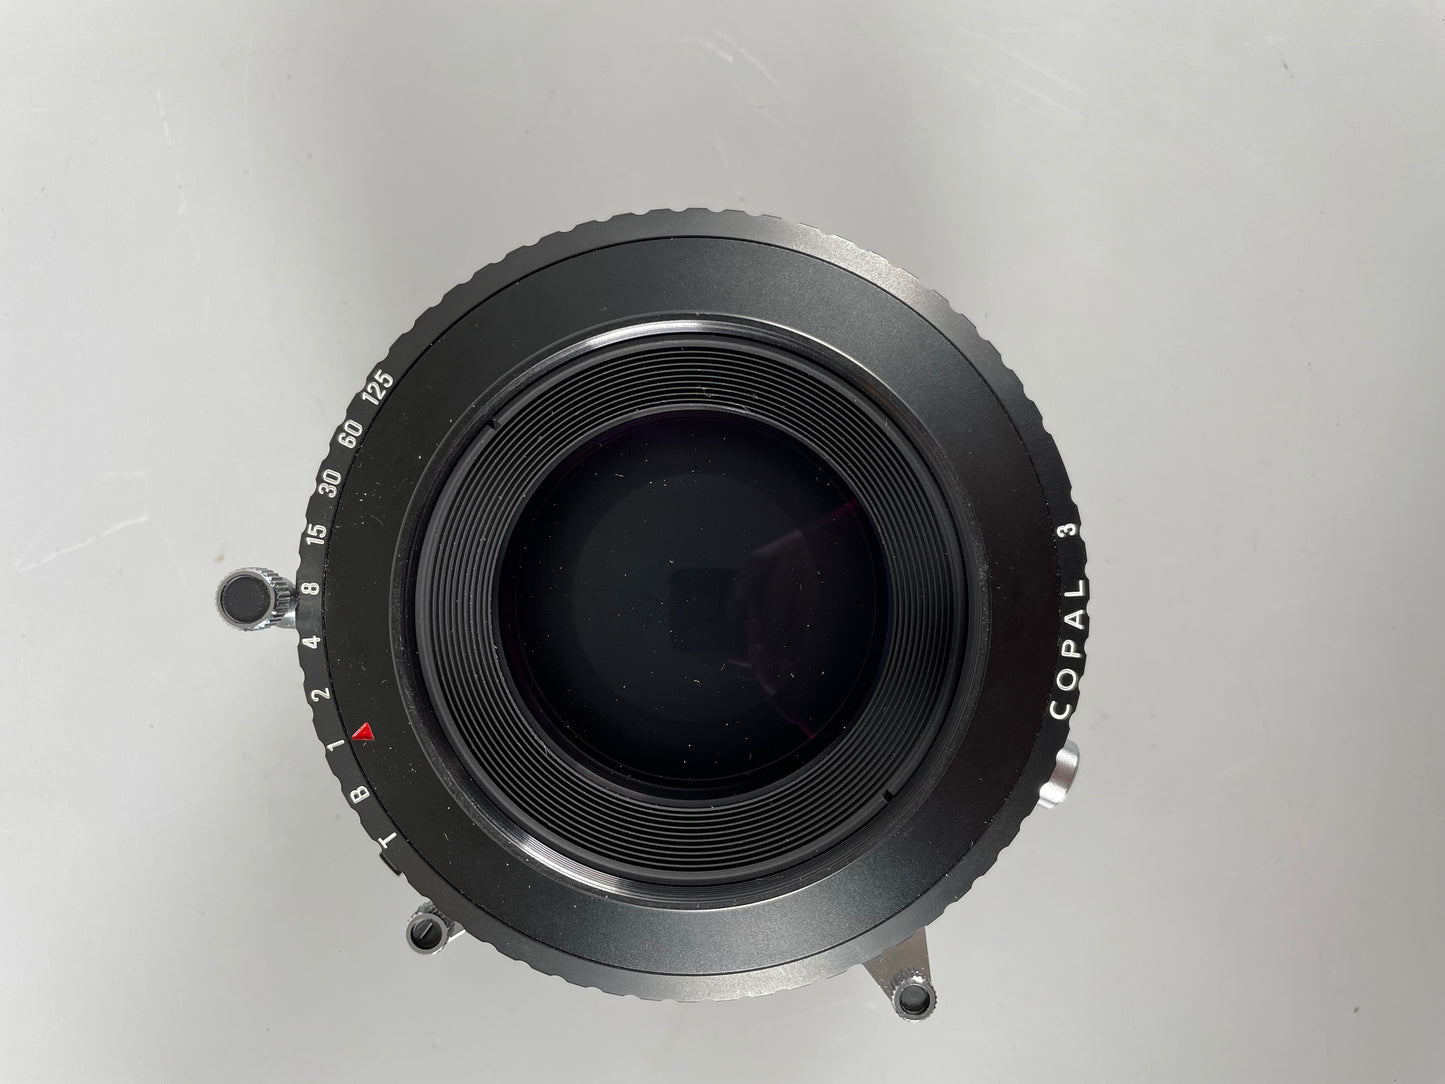 Nikon Nikkor M 450mm f9 Large Format Lens Copal 3 Shutter